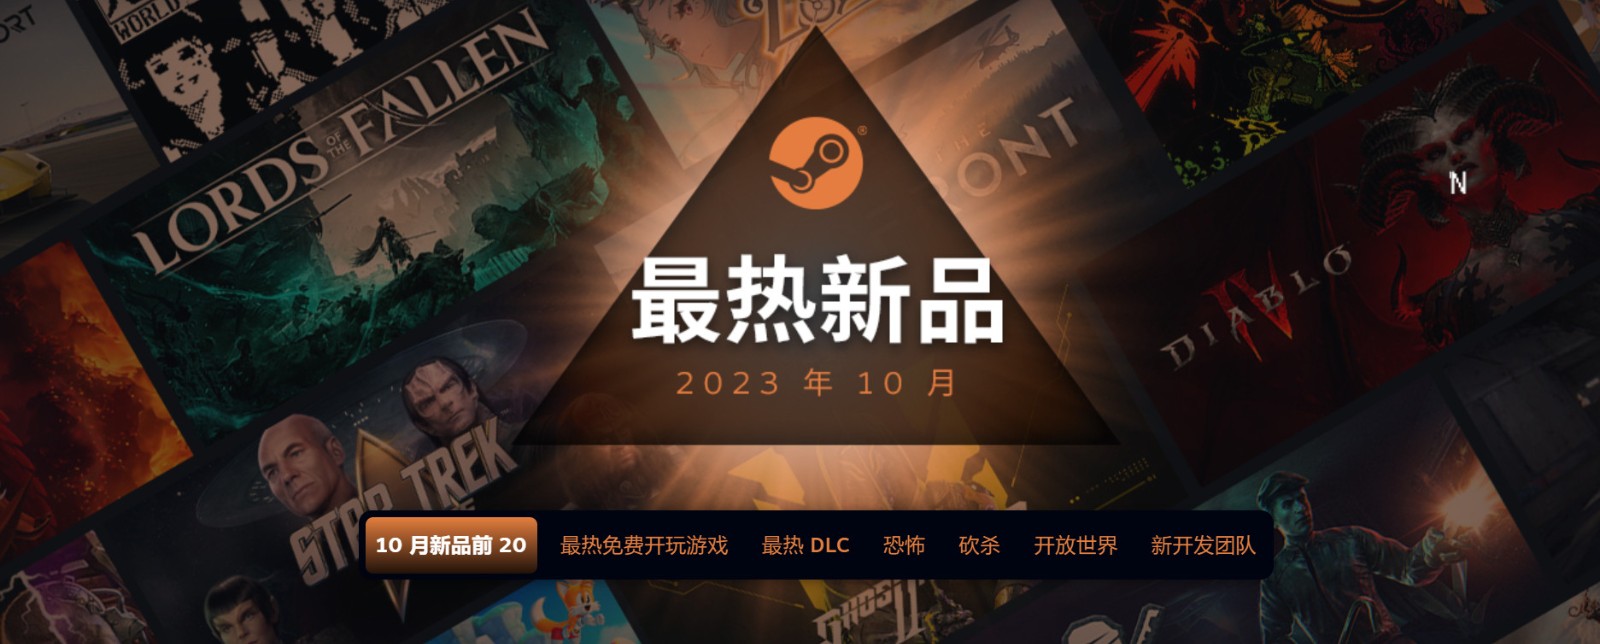 2023年10月Steam最热新品 《暗黑4》《堕落之主》等上榜